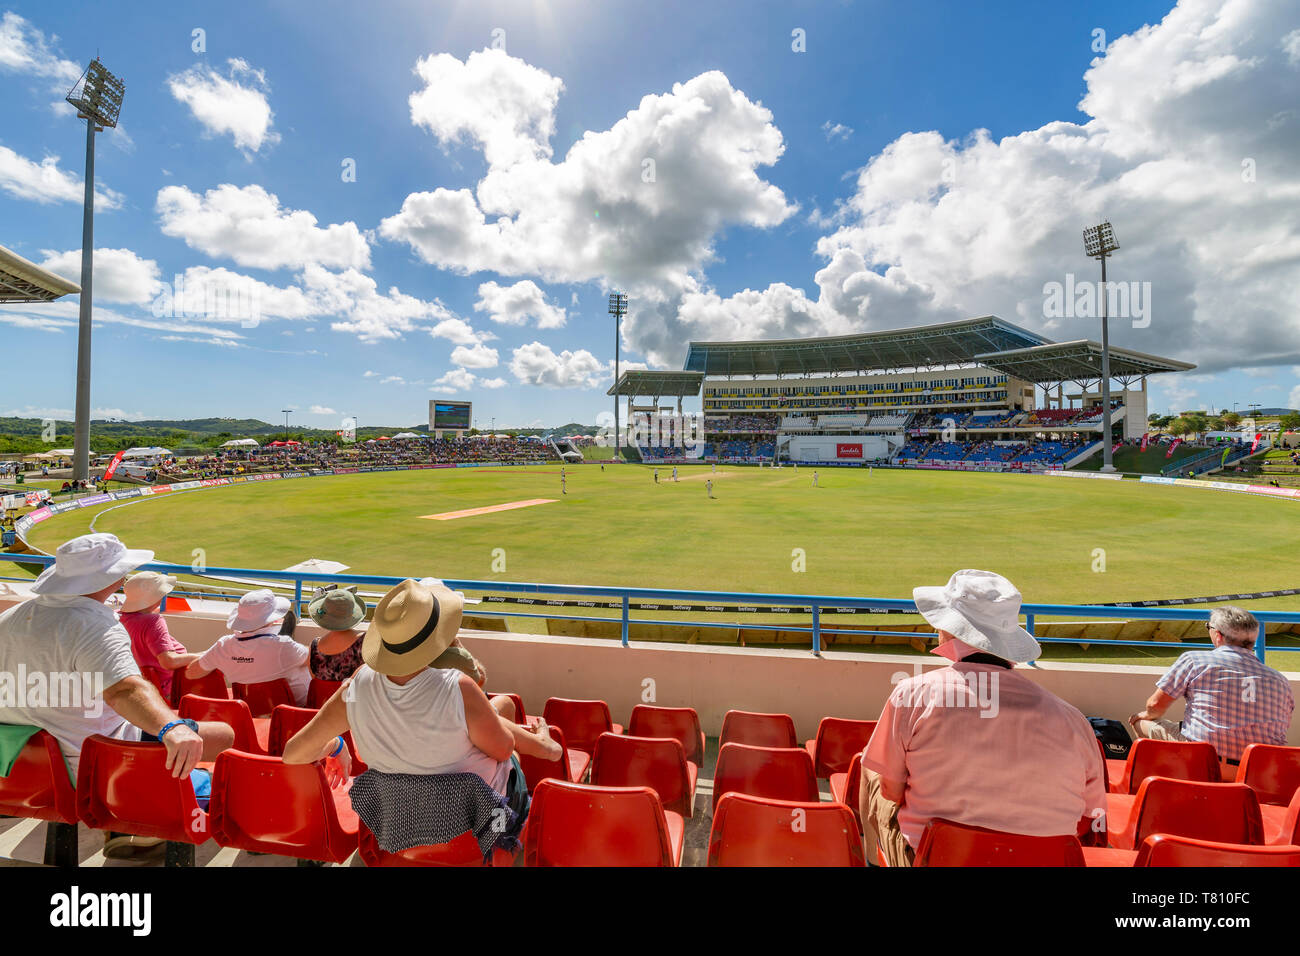 Voir de match de cricket Sir Vivian Richards Stadium, Saint Georges, Antigua, Antilles, Caraïbes, Amérique Centrale Banque D'Images